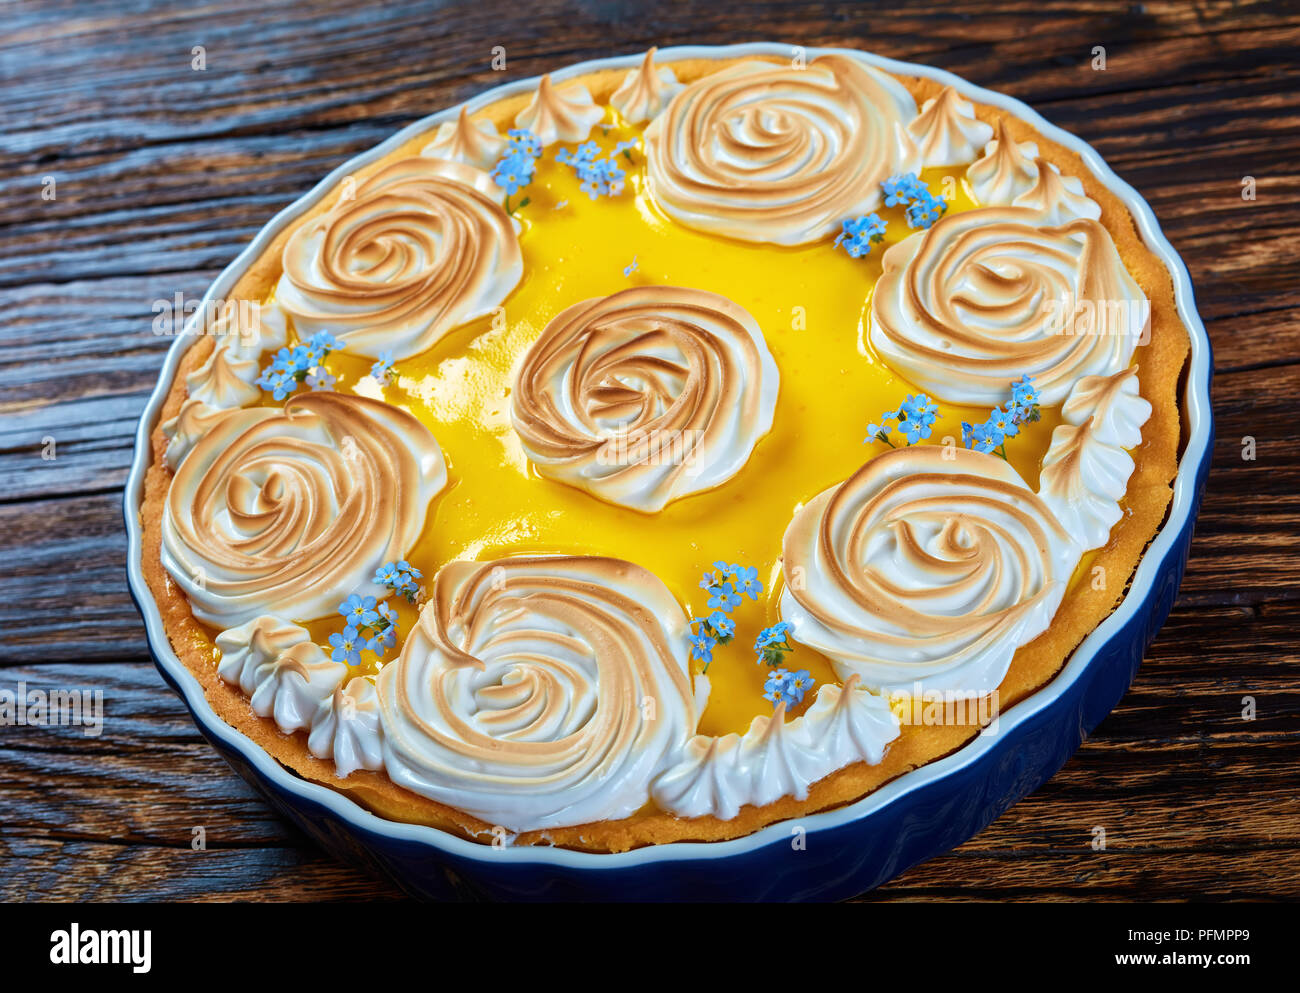 Klassische lemon tart - köstliche, frische Backwaren mit einer glatten  Zitrone Füllung mit Baiser Rosen und genießbaren frischen Blumen, Ansicht  von oben, in der Nähe Stockfotografie - Alamy